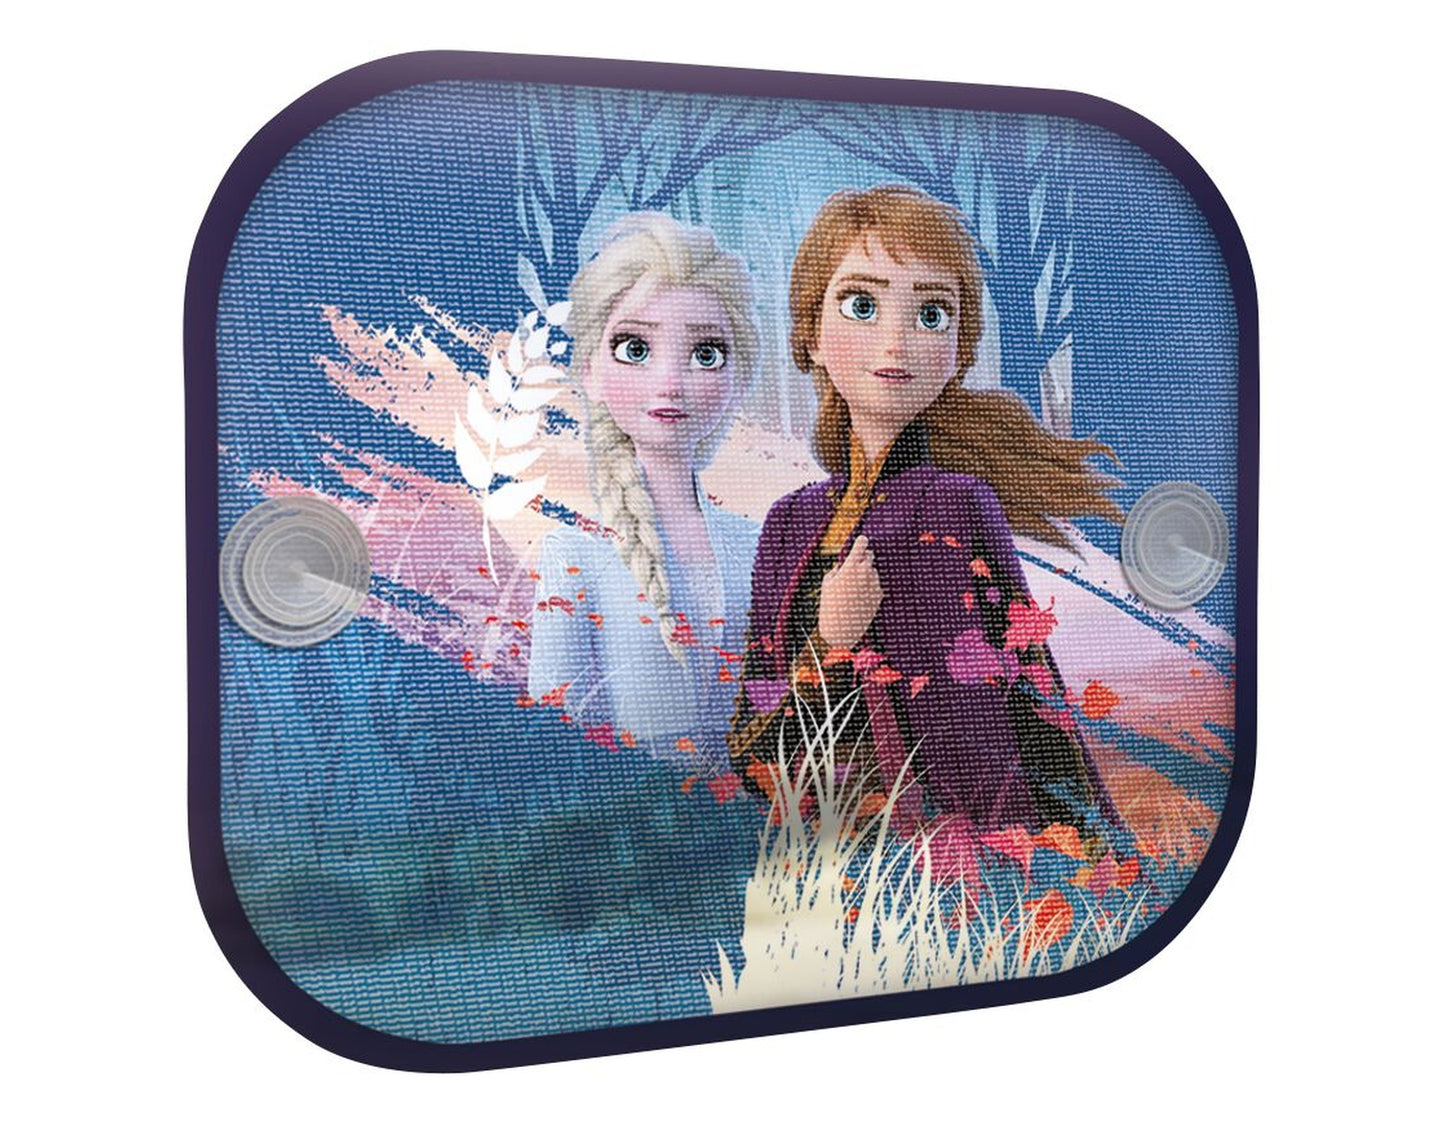 Disney Sonnenschutz Frozen die Eiskönigin 2, 36 × 44 cm, 2 Stück